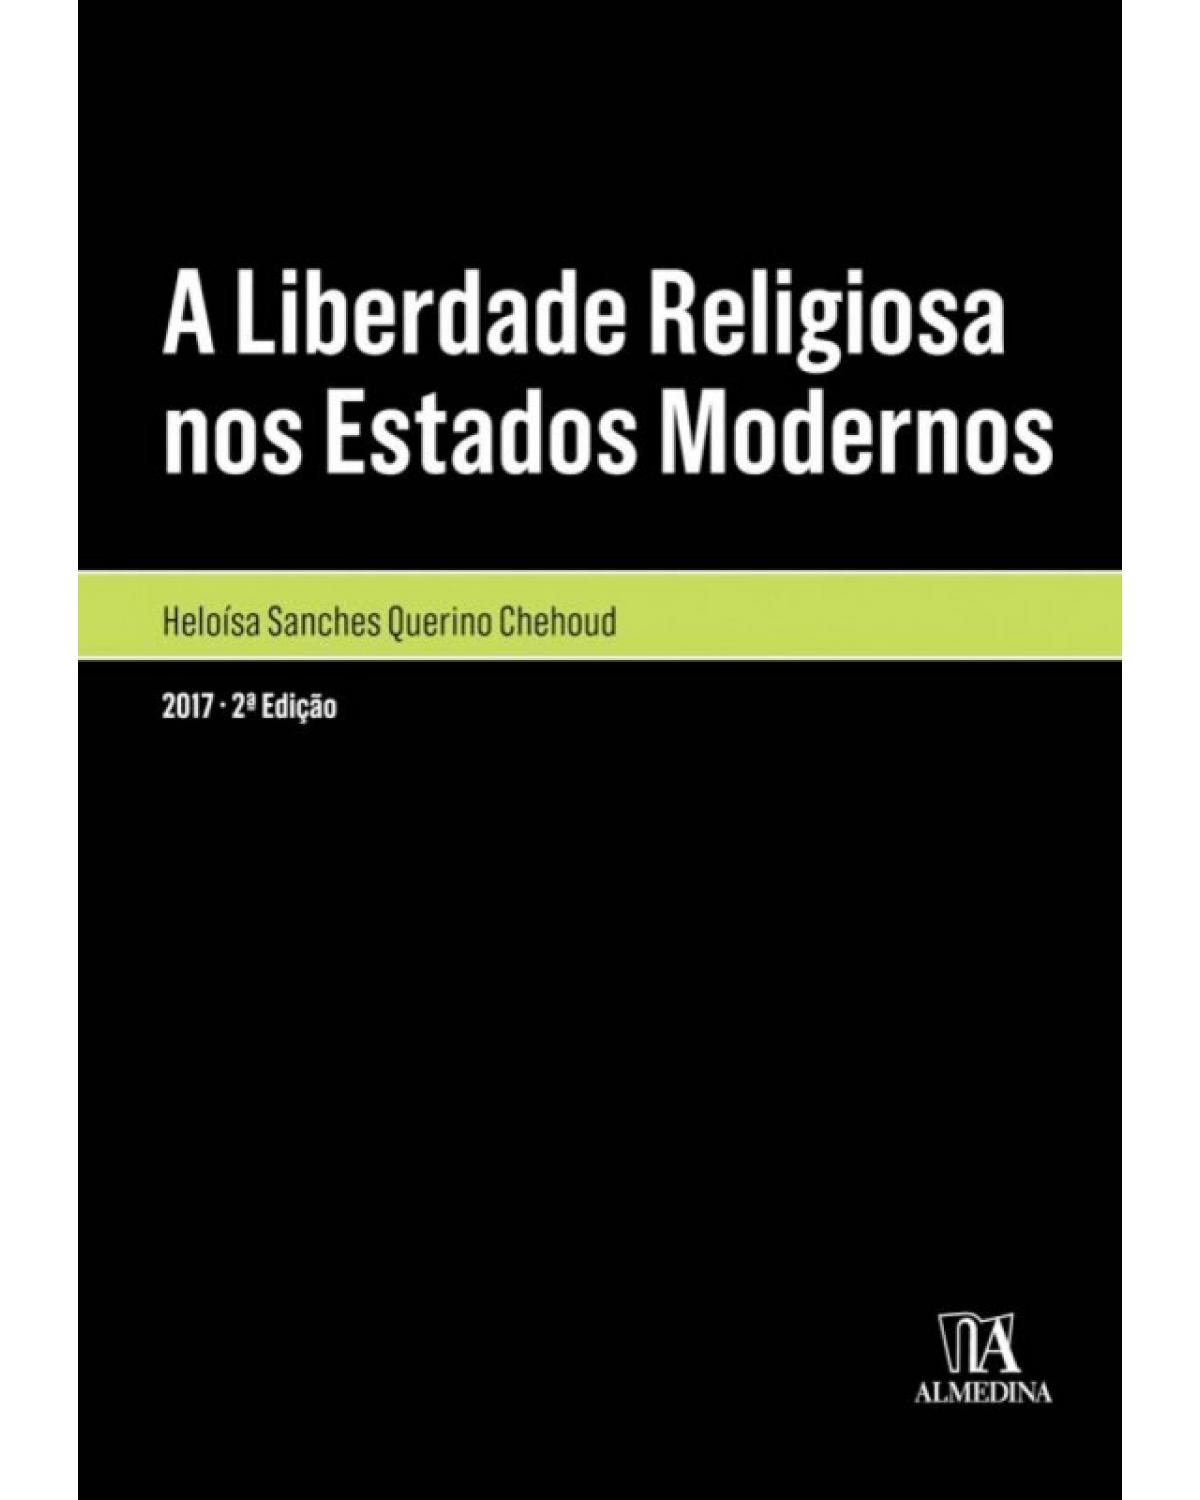 A liberdade religiosa nos estados modernos - 2ª Edição